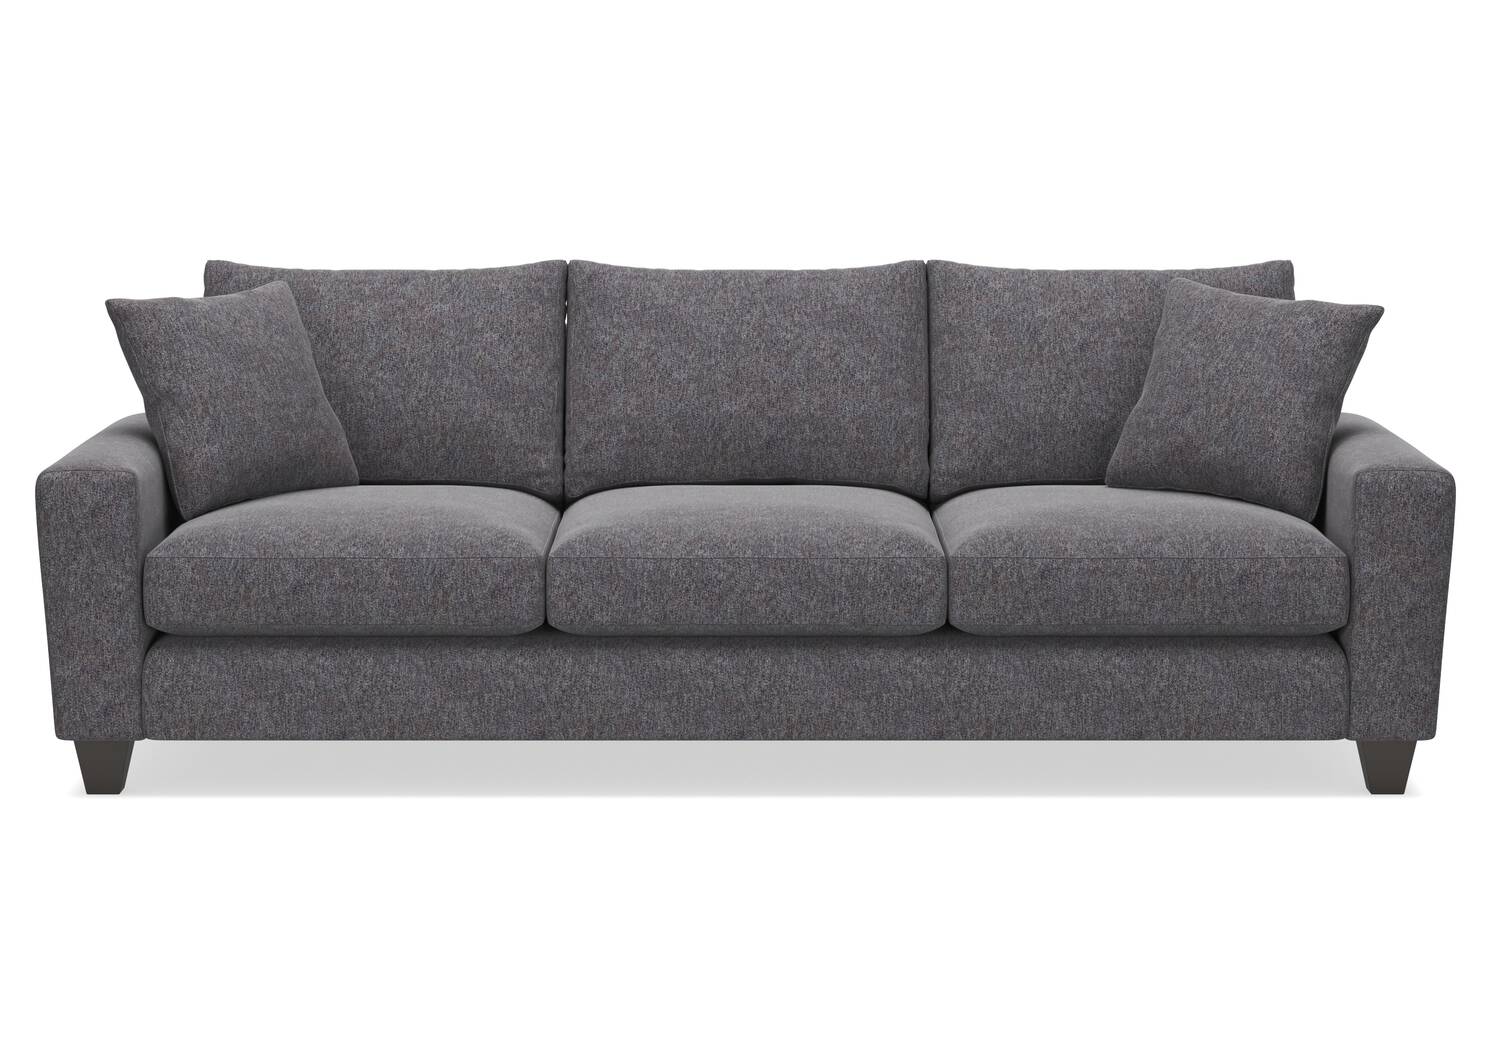 Bronx Custom Sofa